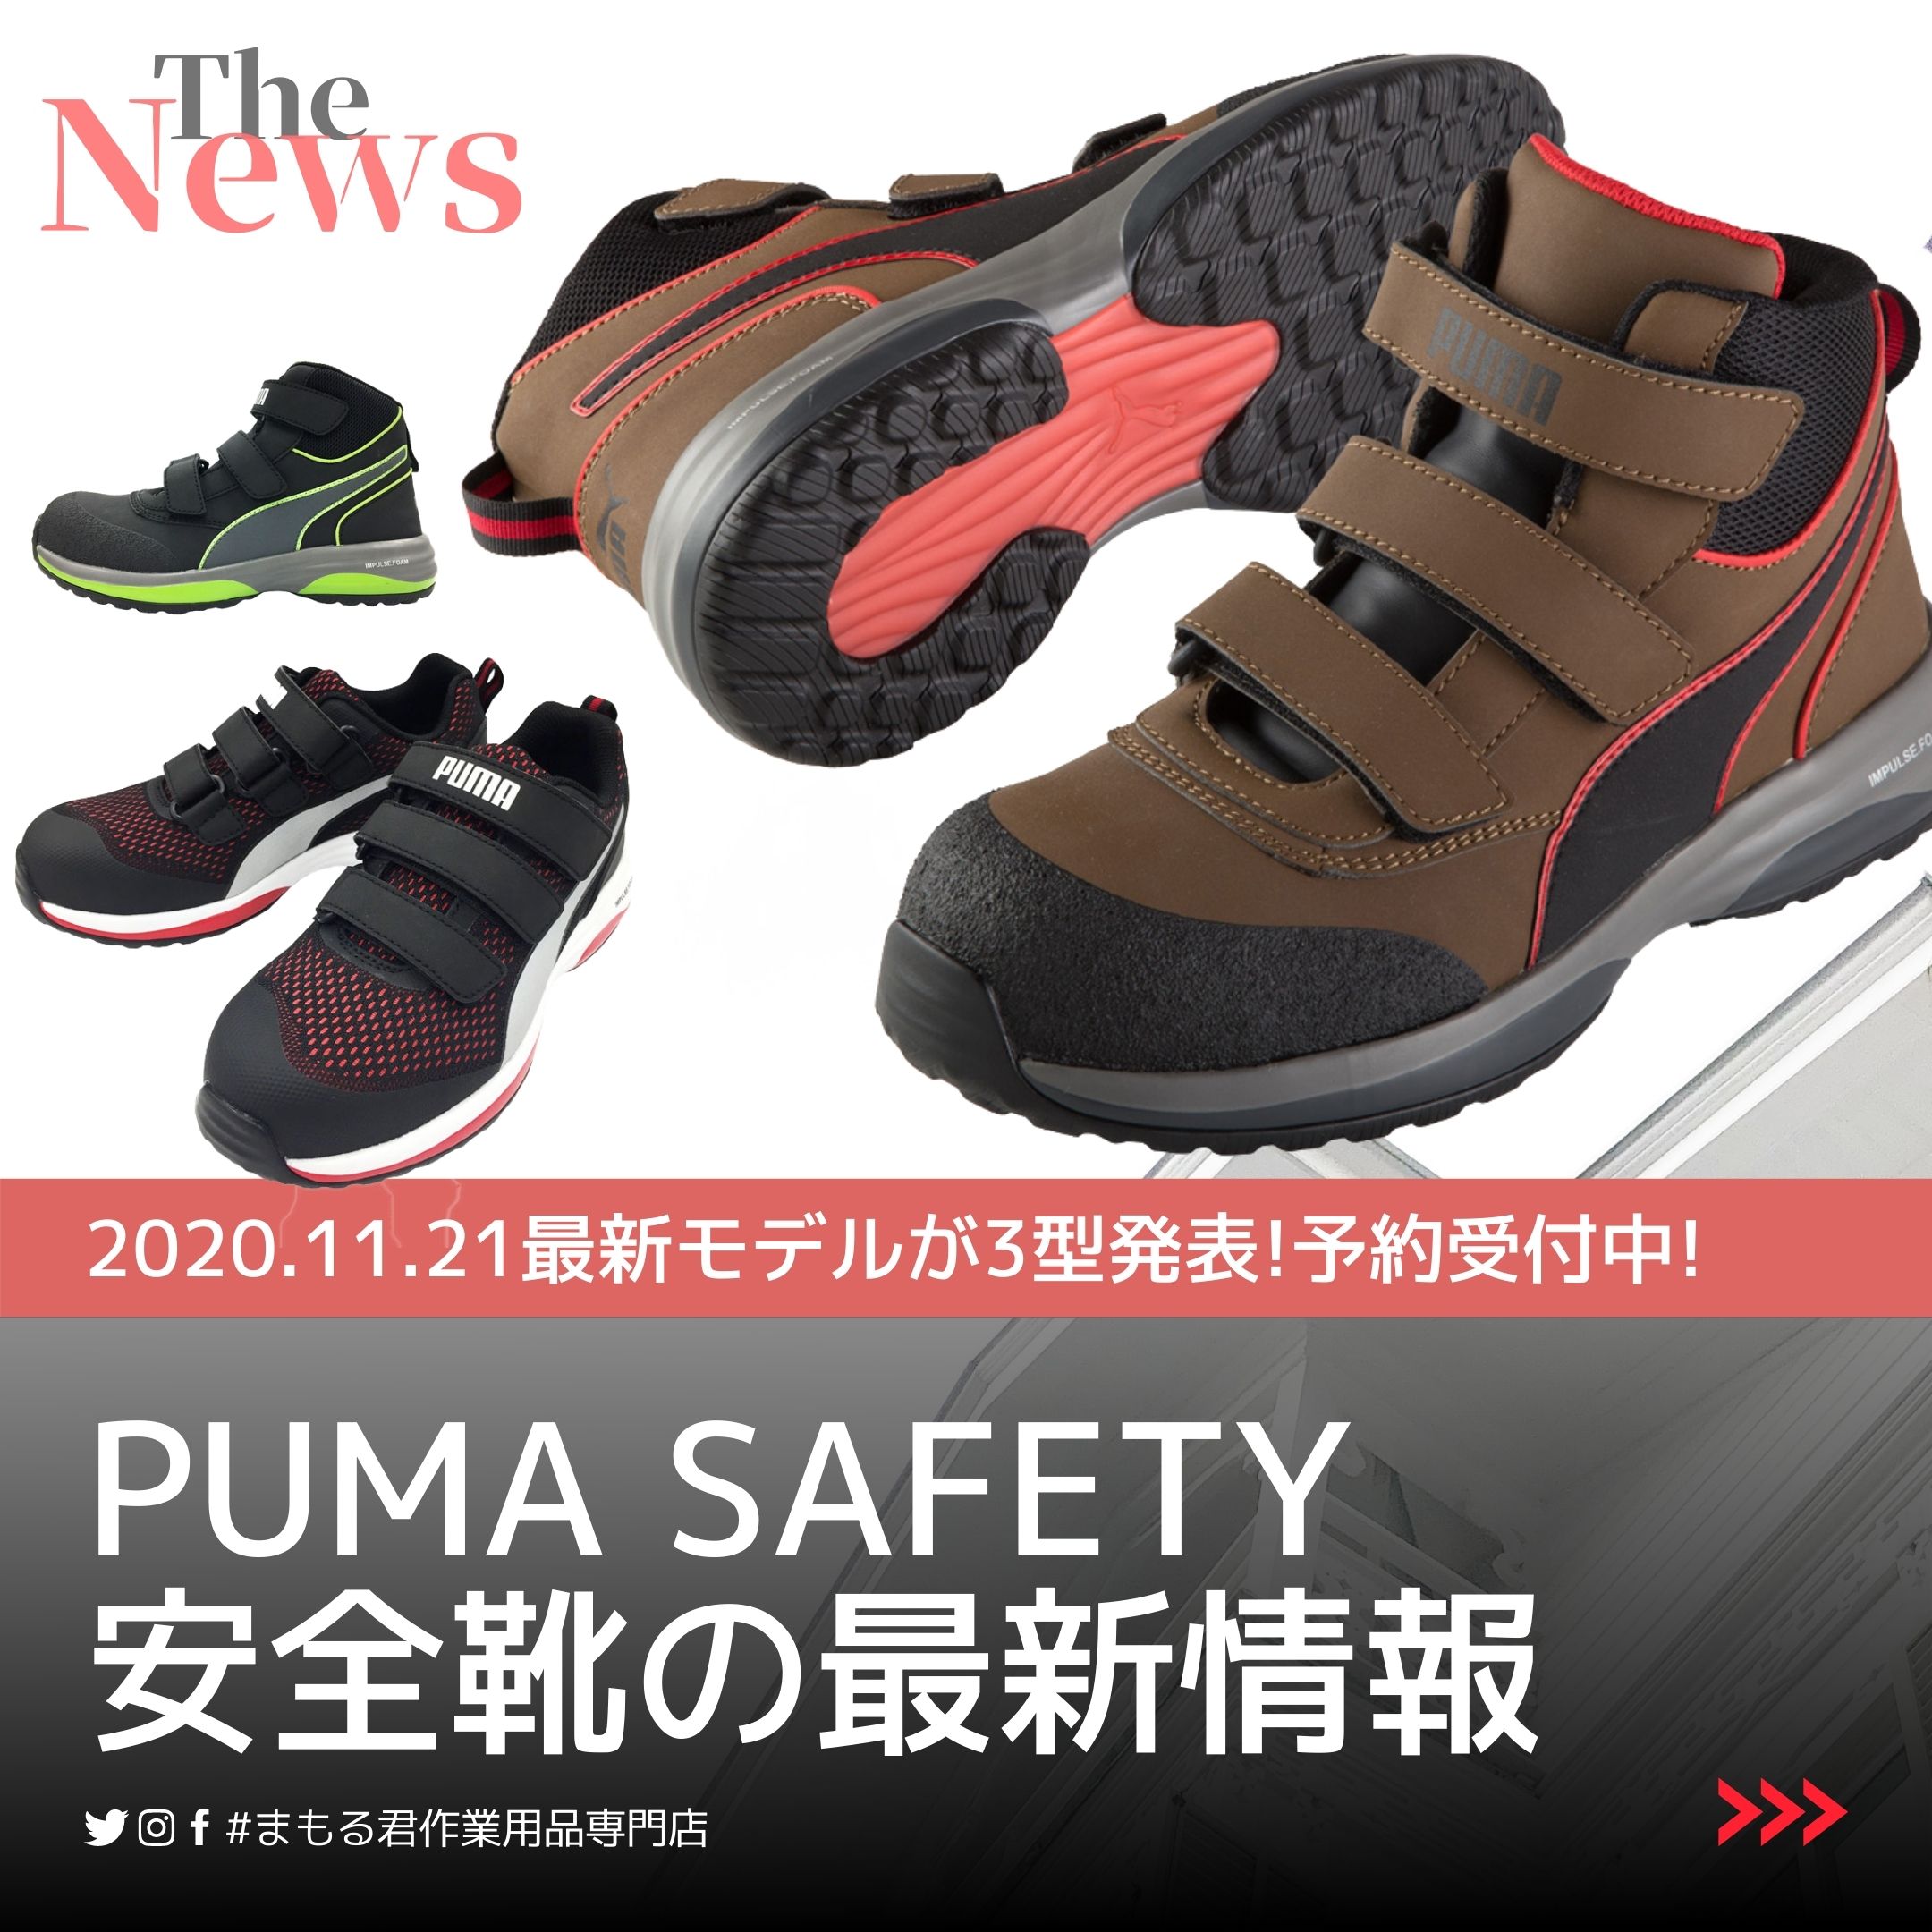 2023年版】プーマ 安全靴の限定モデル情報や定番モデルのご紹介!!